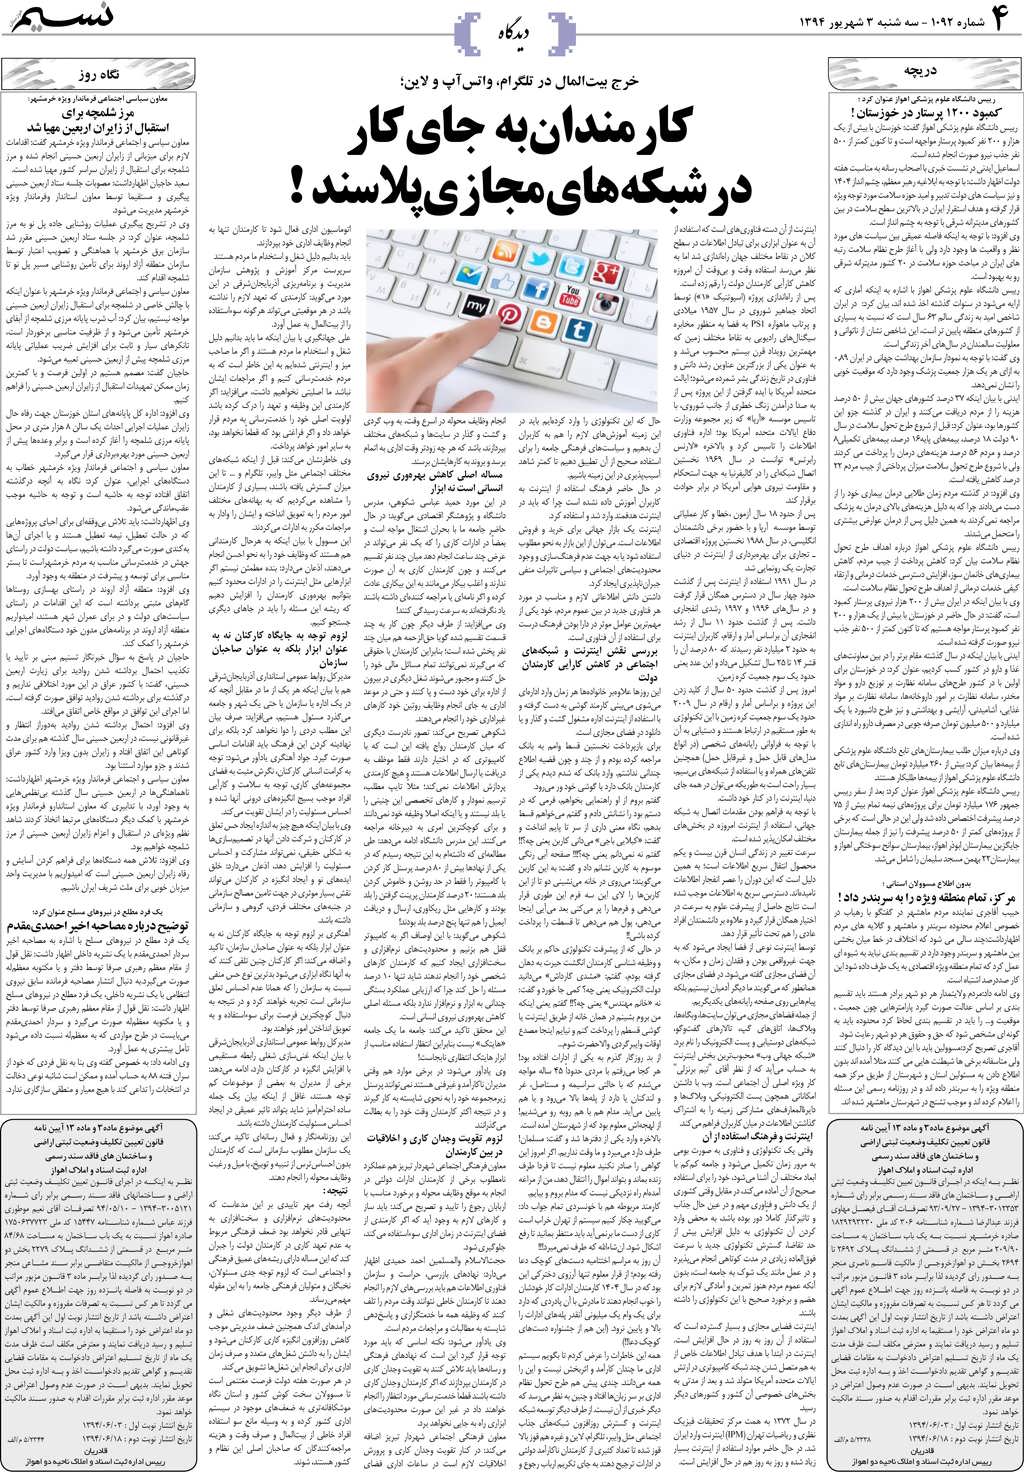 صفحه دیدگاه روزنامه نسیم شماره 1092